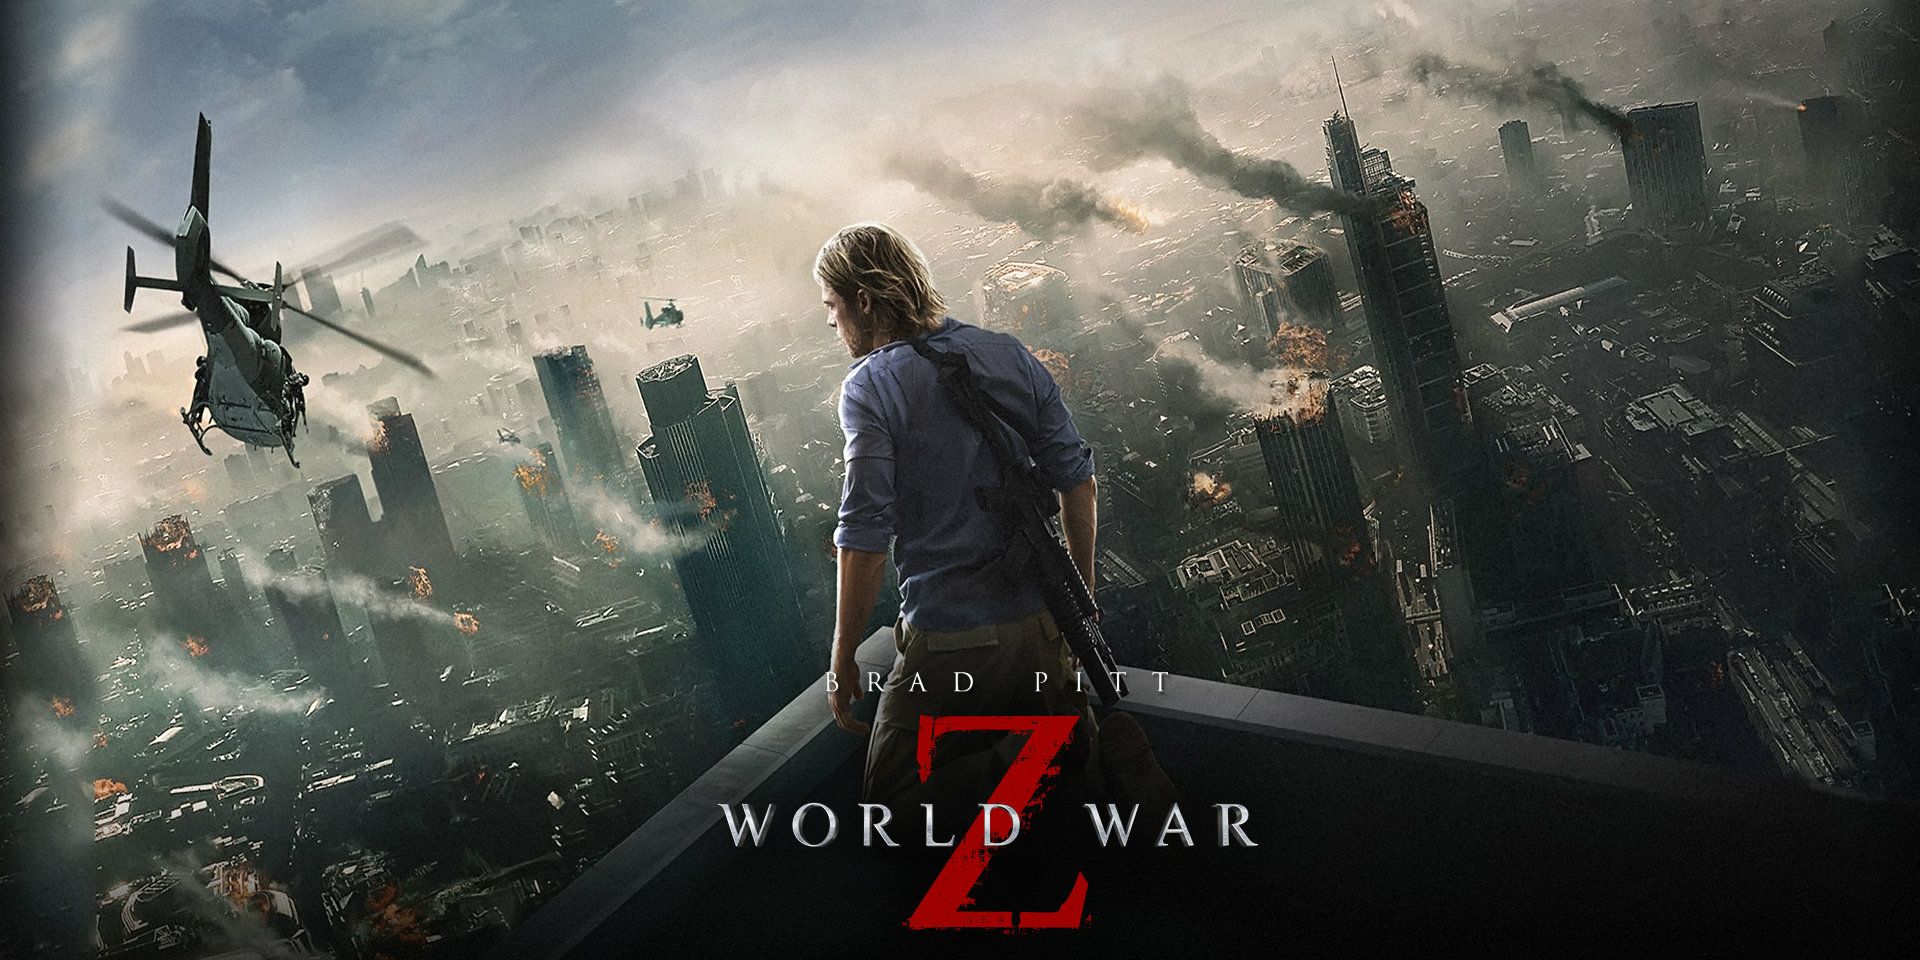 World War Z 2: What David Fincher's Sequel Was About